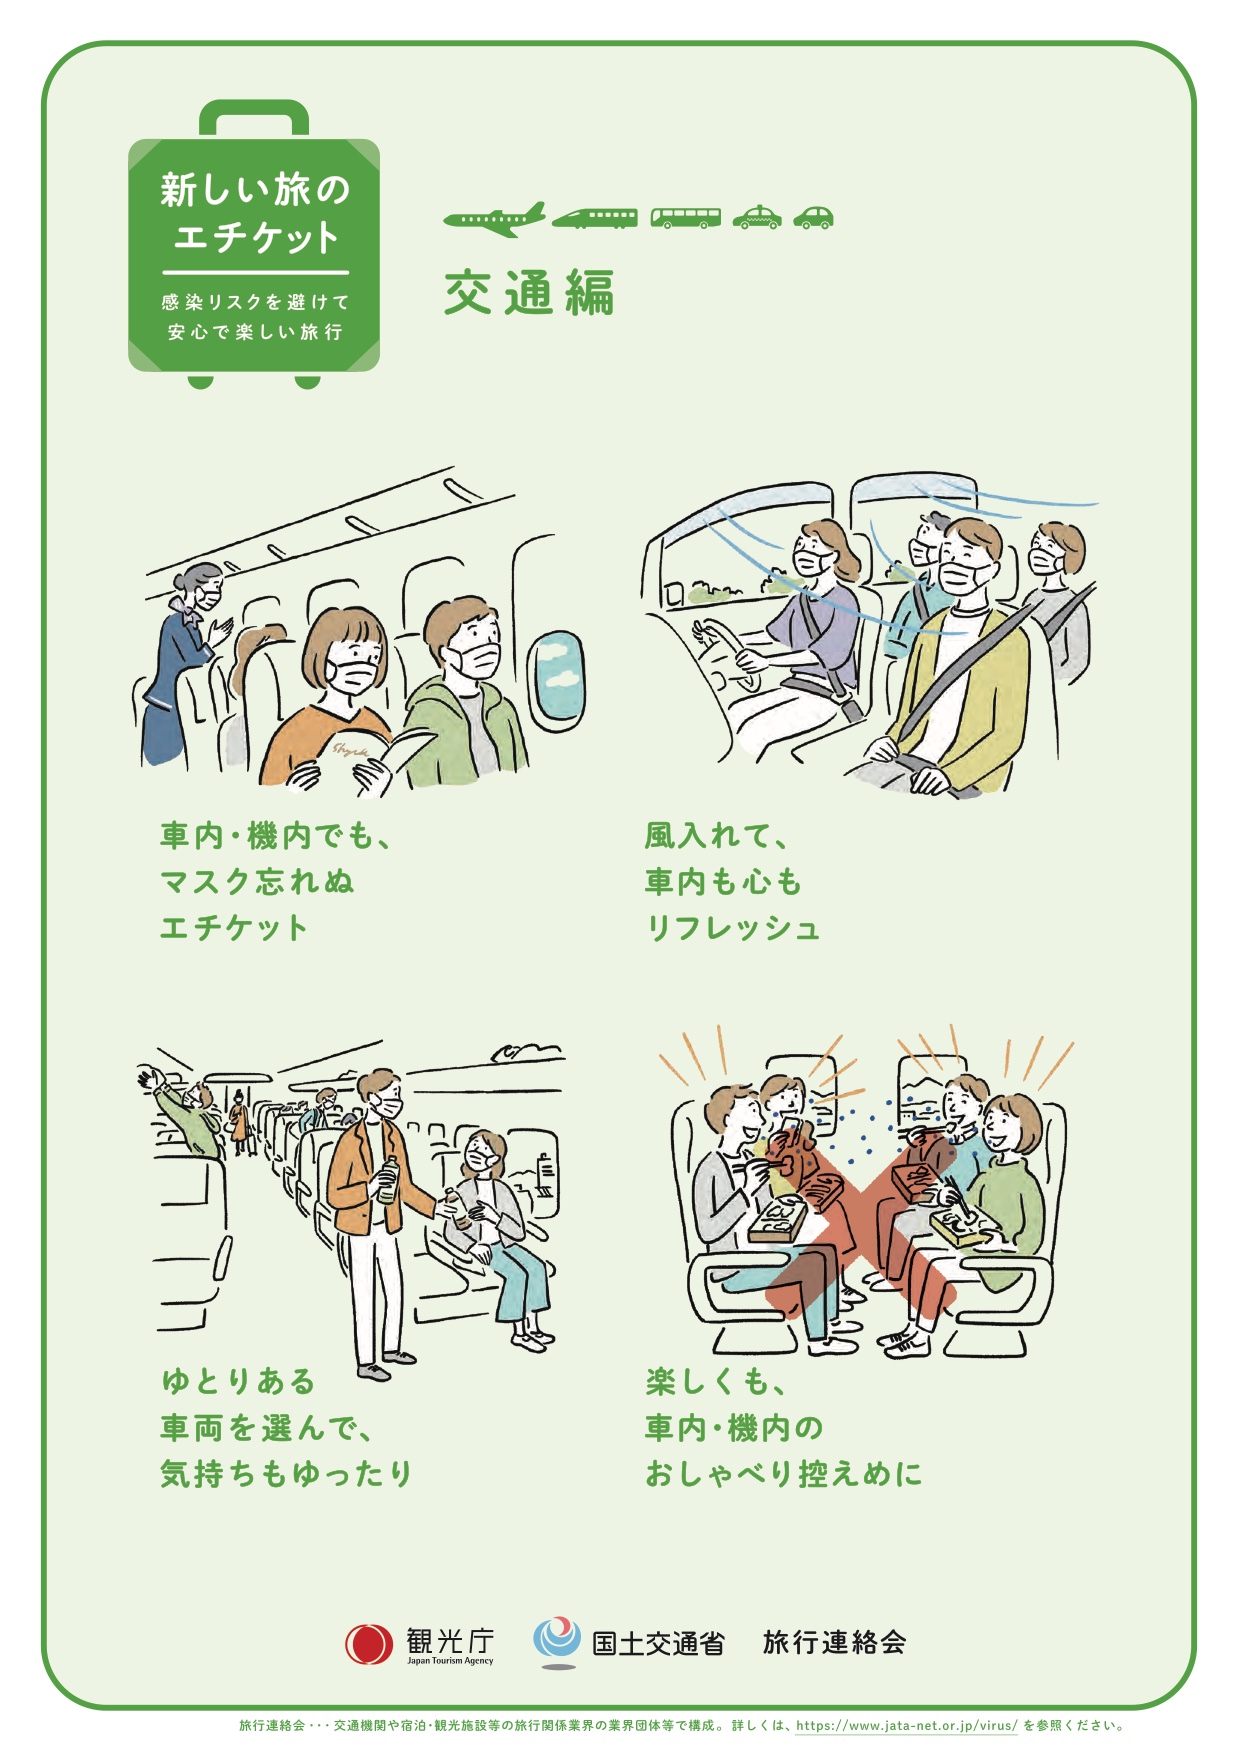 Lüften währen der Autofahrt und der Verzicht auf laute Gespräche im Auto und Zug sind weitere Hinweise. | Tourismusbehörde Japan